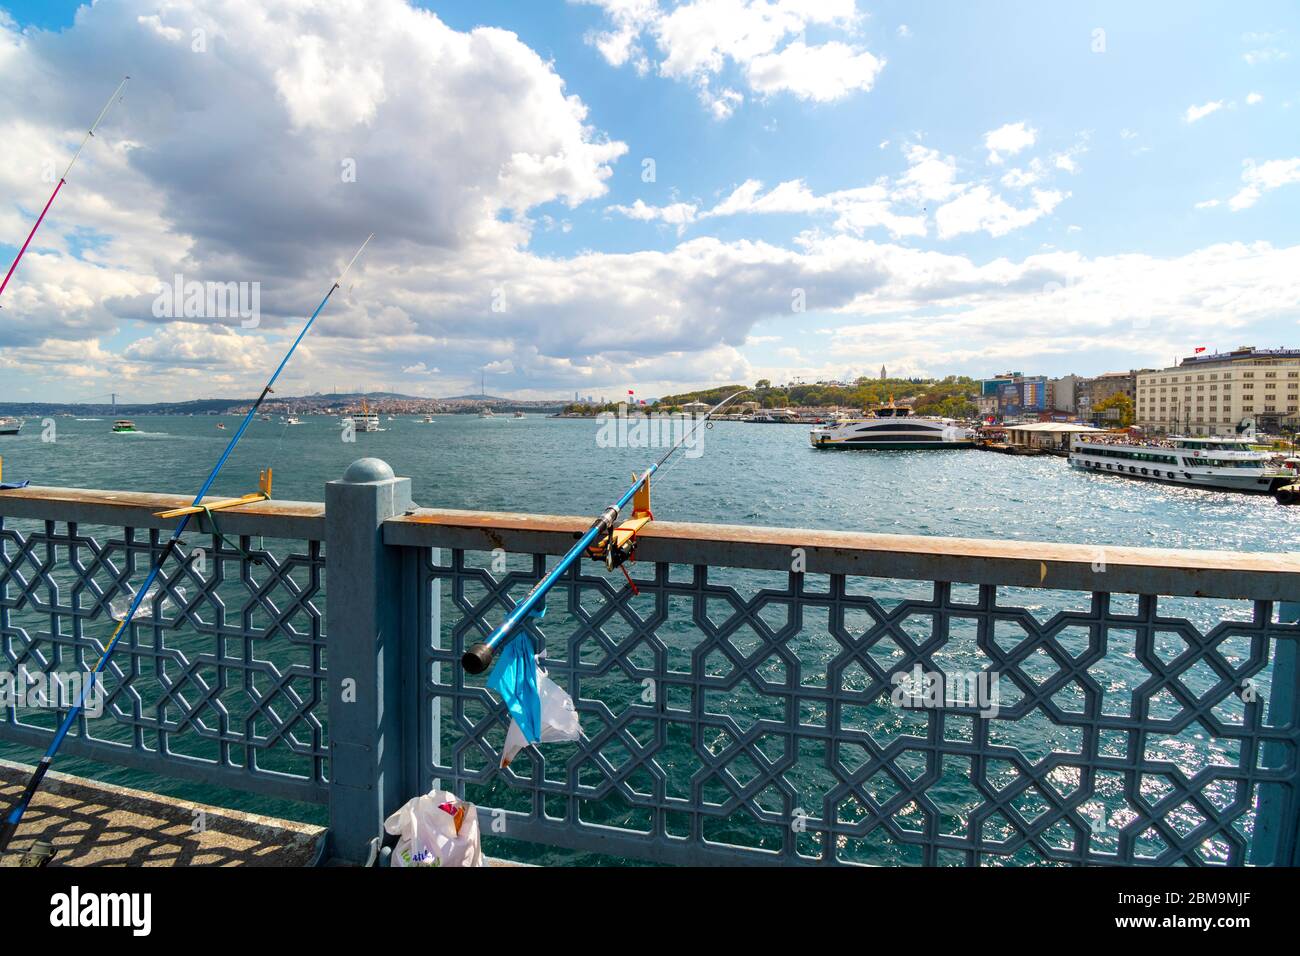 Las cañas de pescar y la línea sobresalen sobre el río Bósforo desde el puente de Gálata mientras los barcos de crucero atracan cerca en Estambul, Turquía Foto de stock